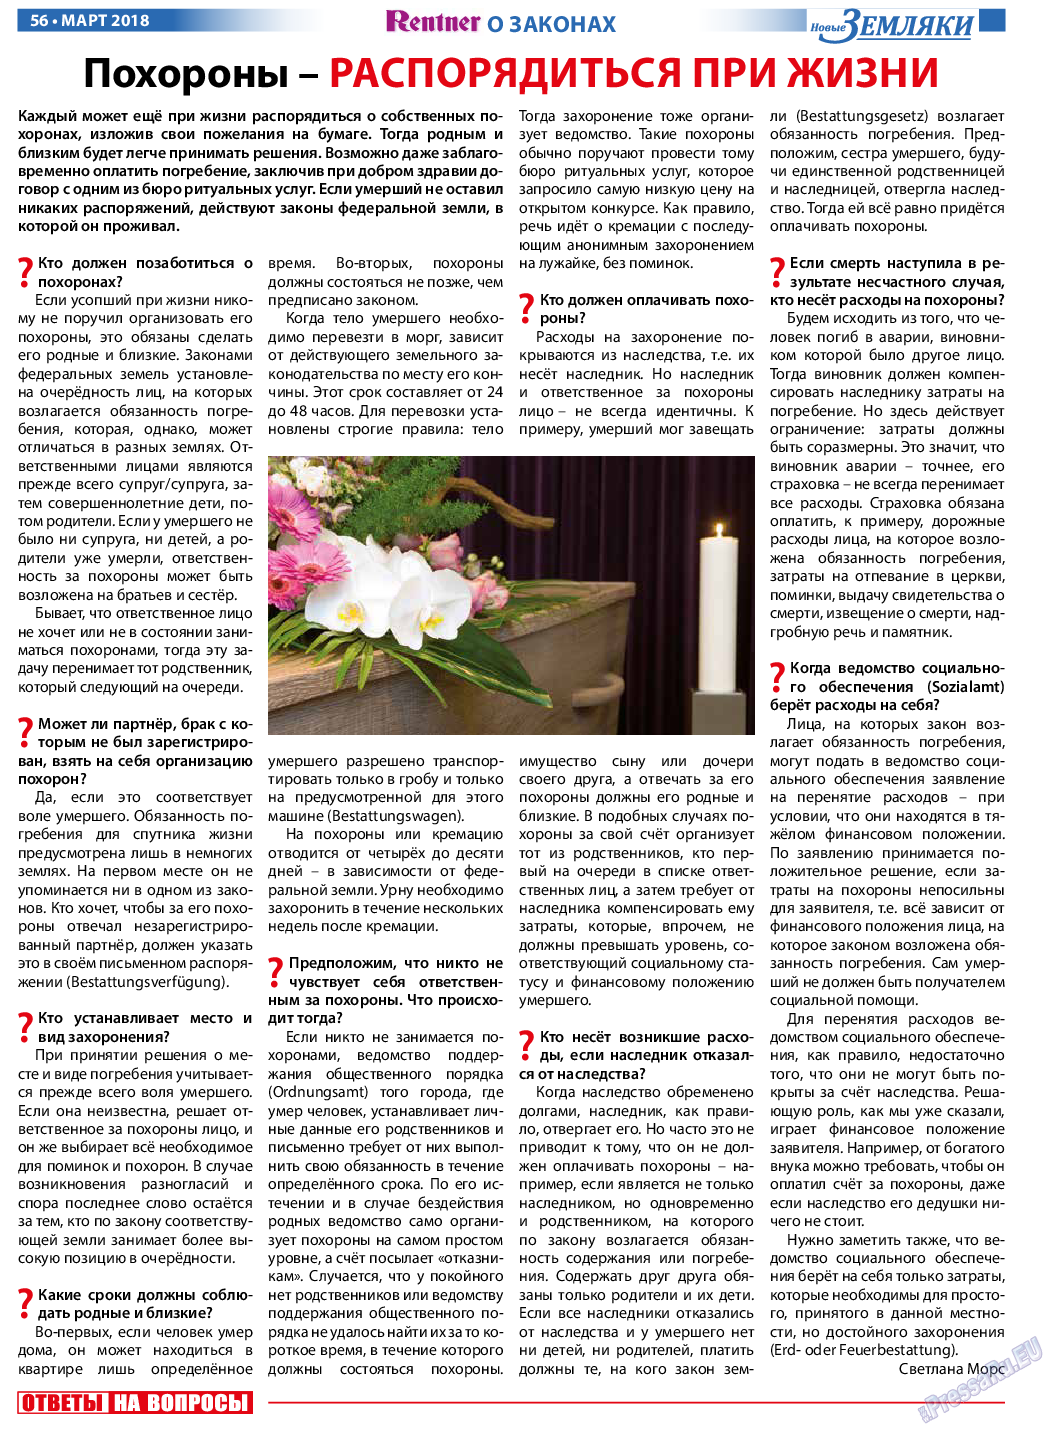 Новые Земляки, газета. 2018 №3 стр.56